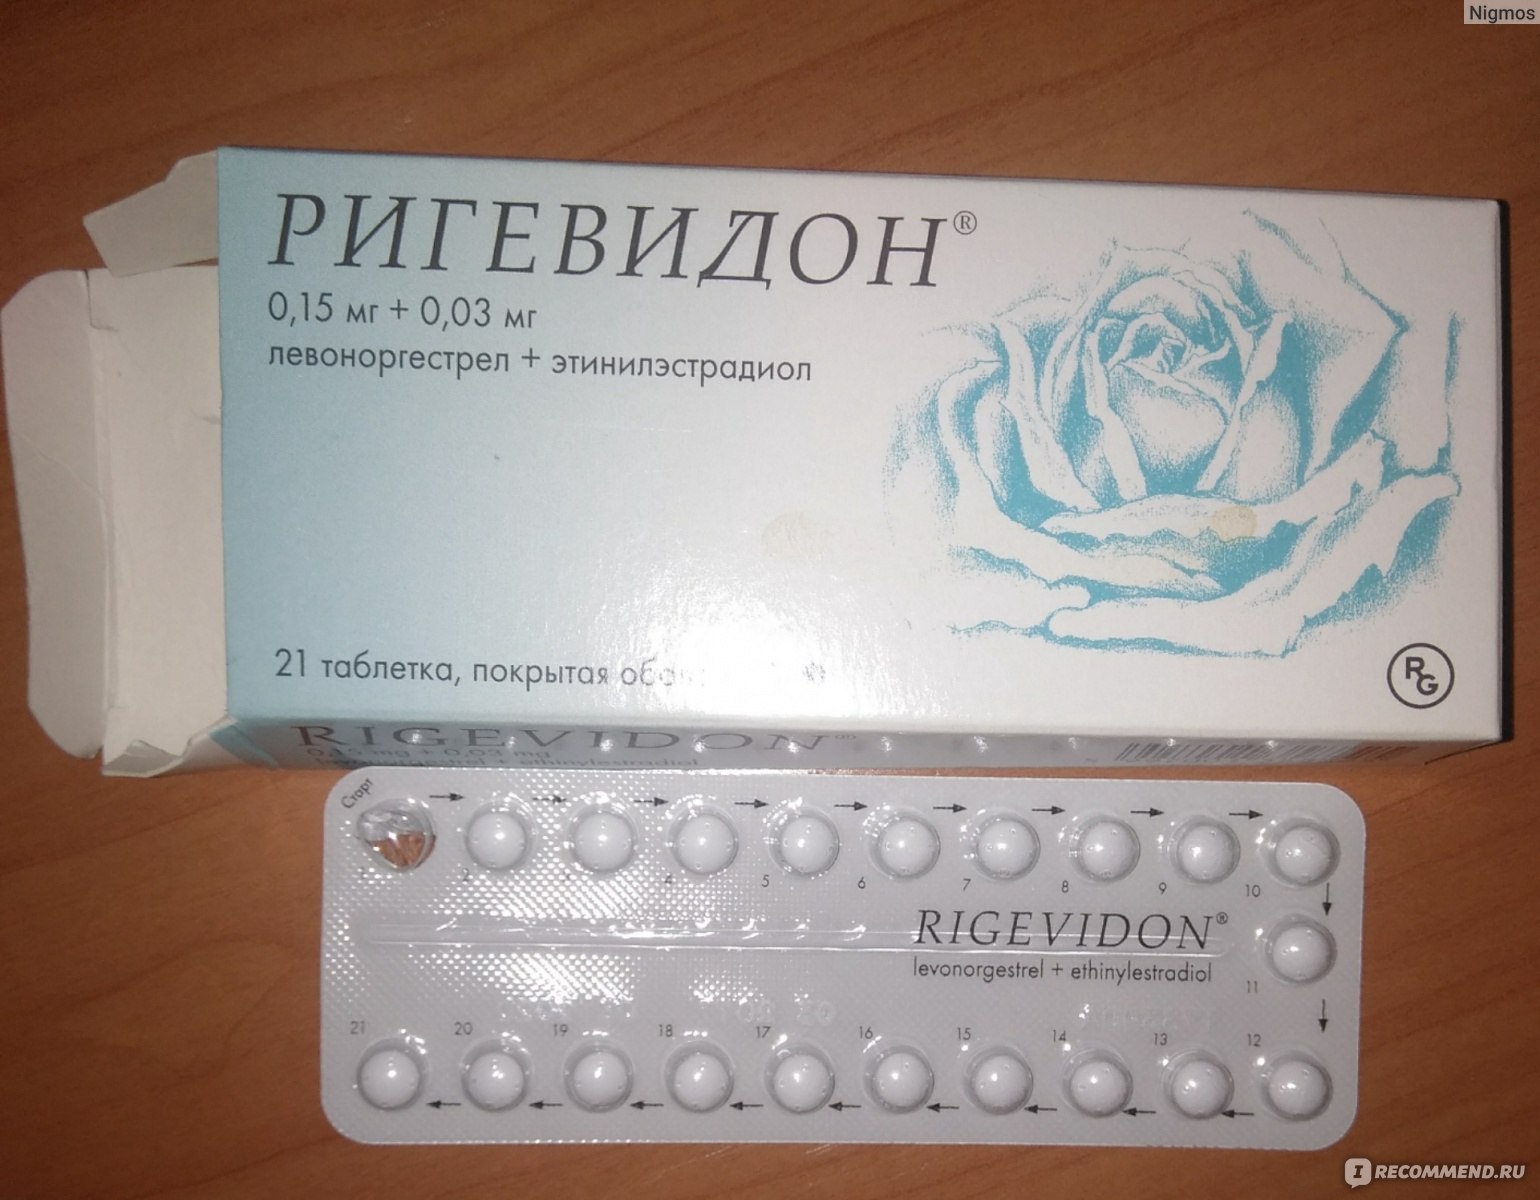 Таблетка от нежелательной часа. Противозачаточные таблетки ригевидон. Гормональный препарат ригевидон. Противозачаточные таблетки для женщин ригевидон. Таблетки противозачаточные реговидон.